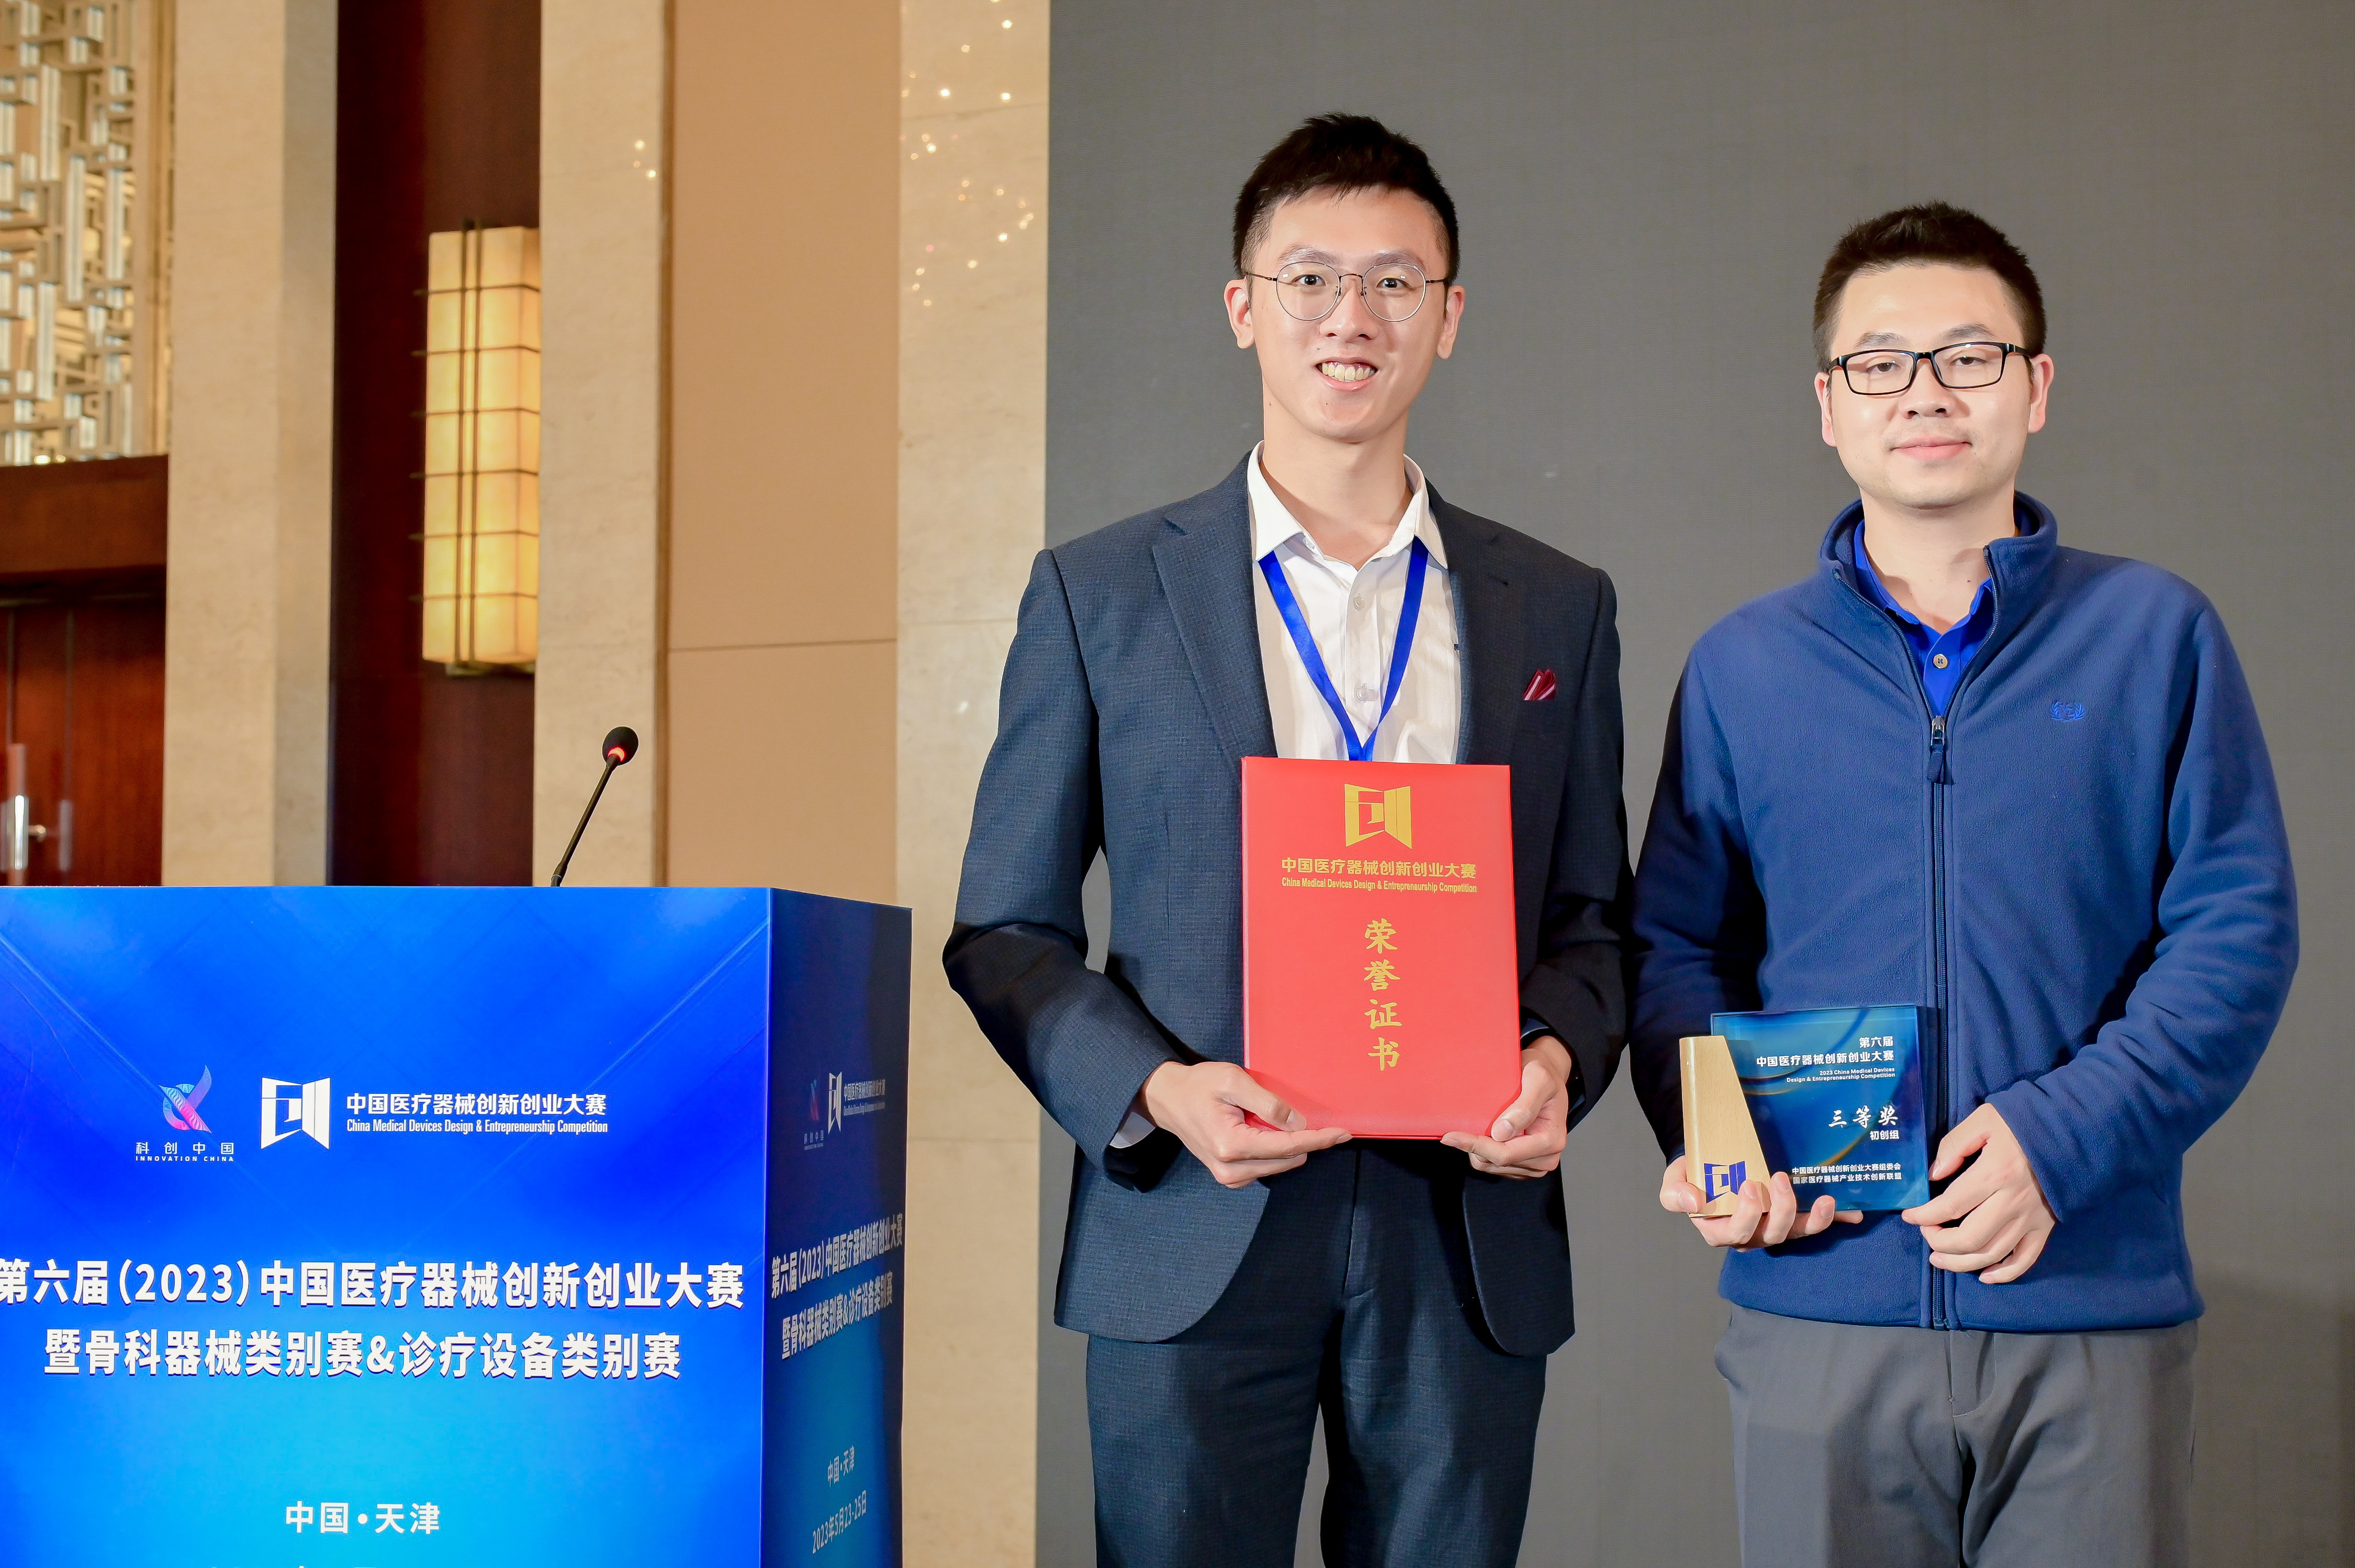 同光生物荣获第六届中国医疗器械创新创业大赛三等奖